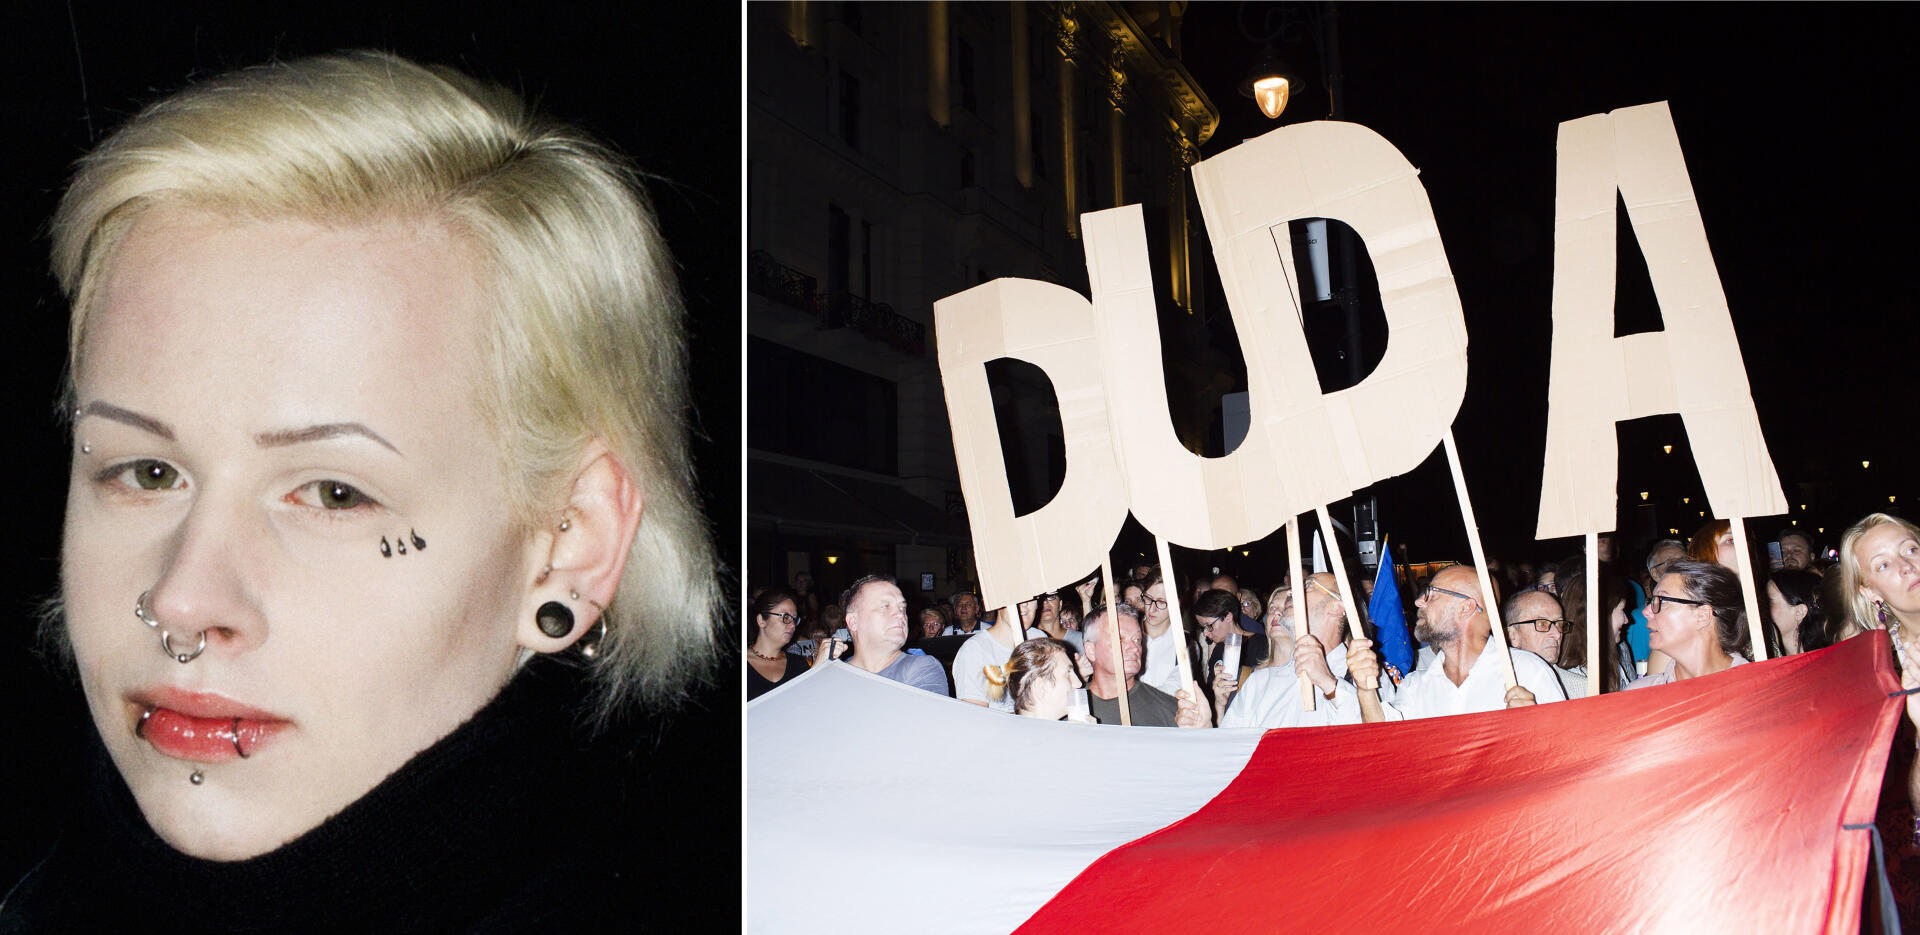 A gauche : une manifestation à Varsovie contre la modification de la loi sur l’avortement, le 23 mars 2018. A droite : en juillet 2018, la rue manifeste contre la politisation du système judicaire, en scandant le nom du président du PIS, Andrzej Duda.